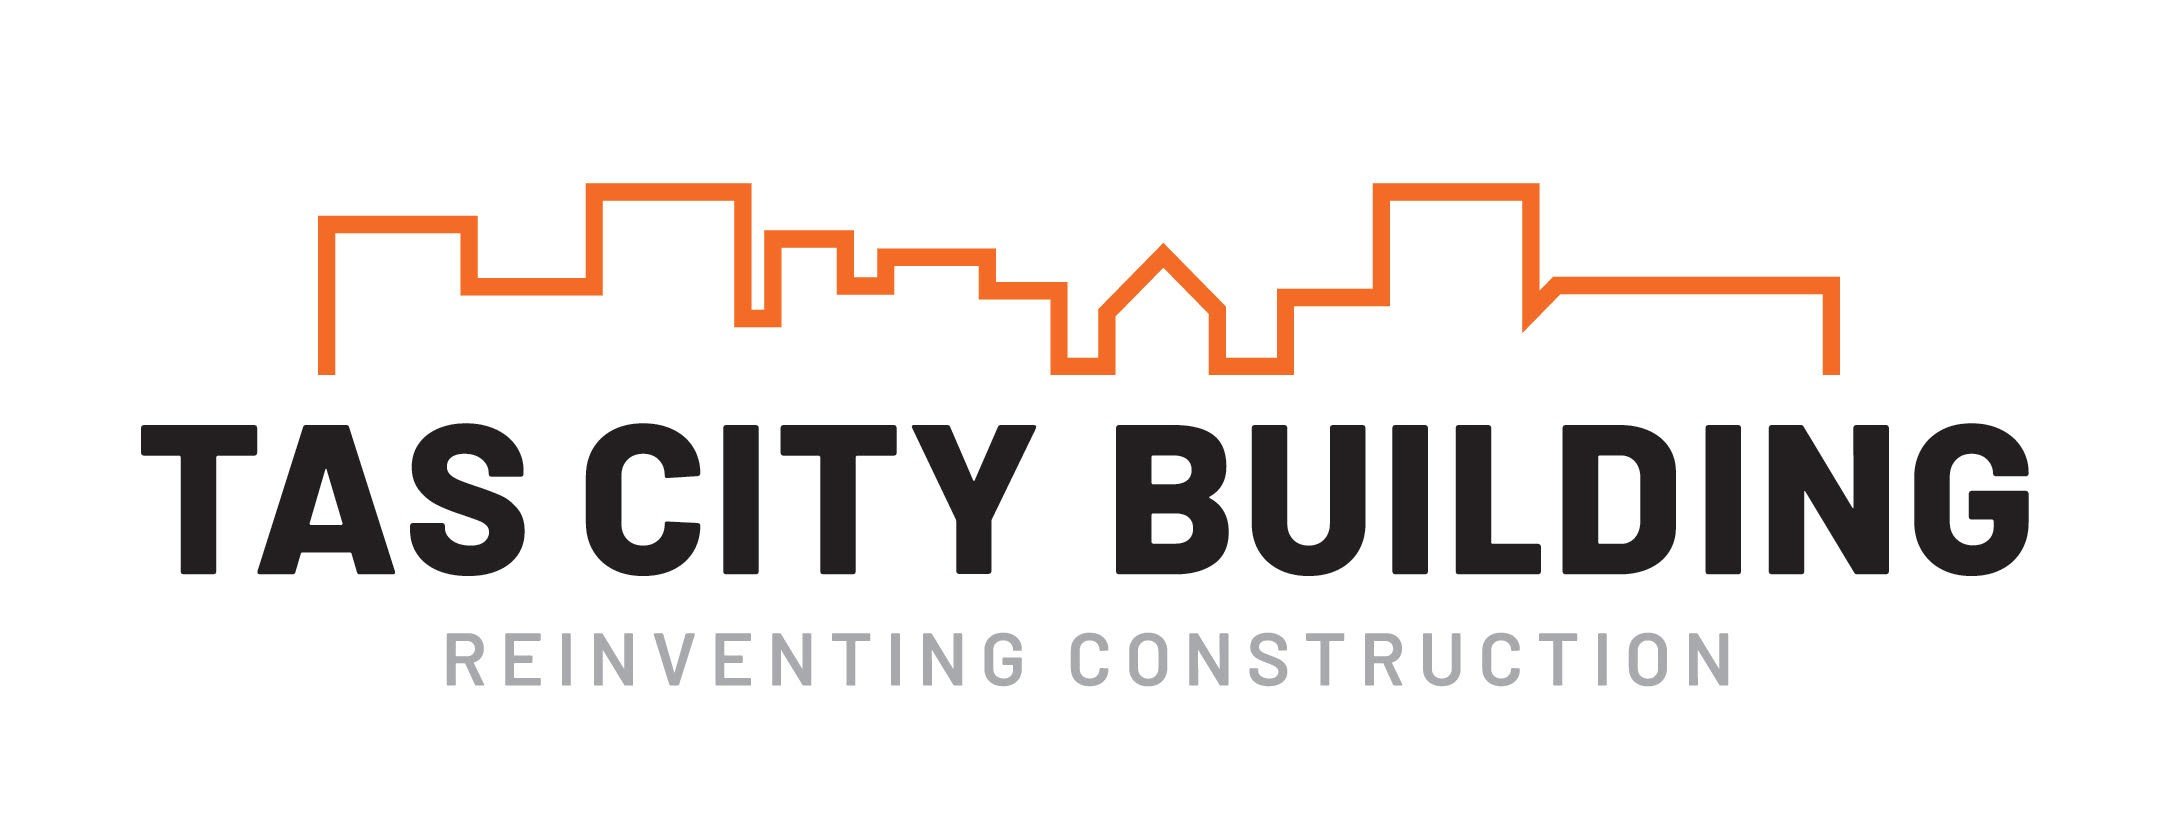 Tas City new logo 2 - Copy.jpg